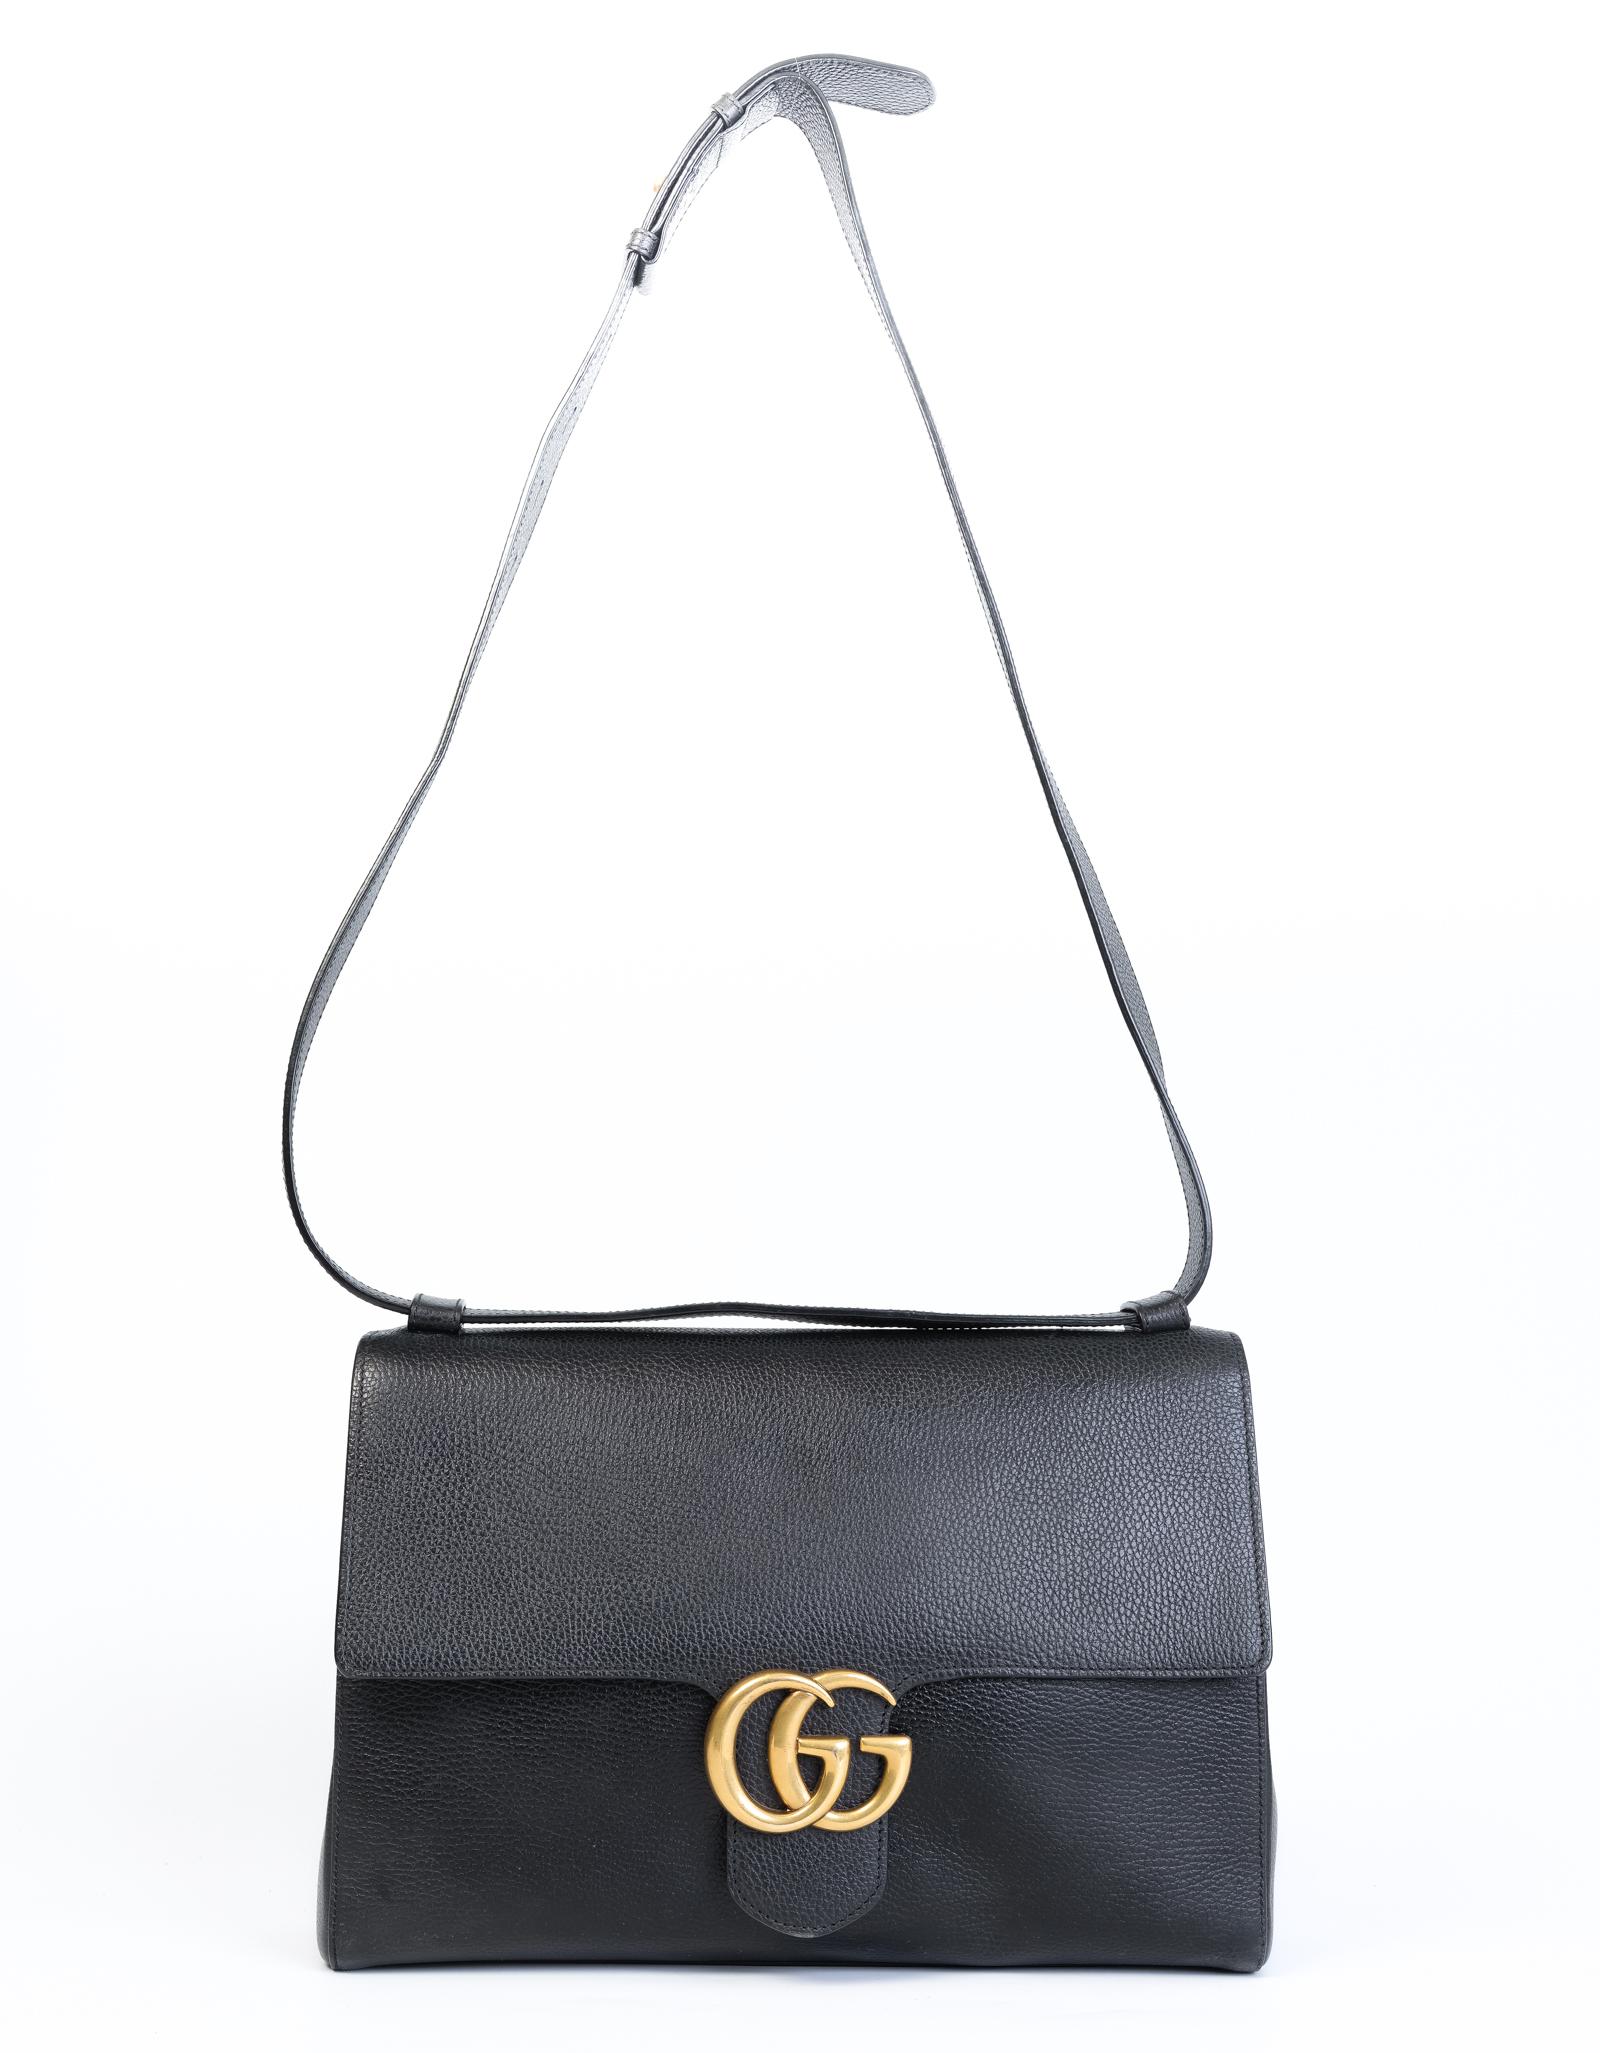 Ce sac Gucci Marmont est réalisé en cuir léger avec une doublure en lin de coton et des ferrures dorées à l'ancienne. Ce sac comporte un compartiment intérieur principal, une poche murale zippée, deux poches à glissière et une fermeture à